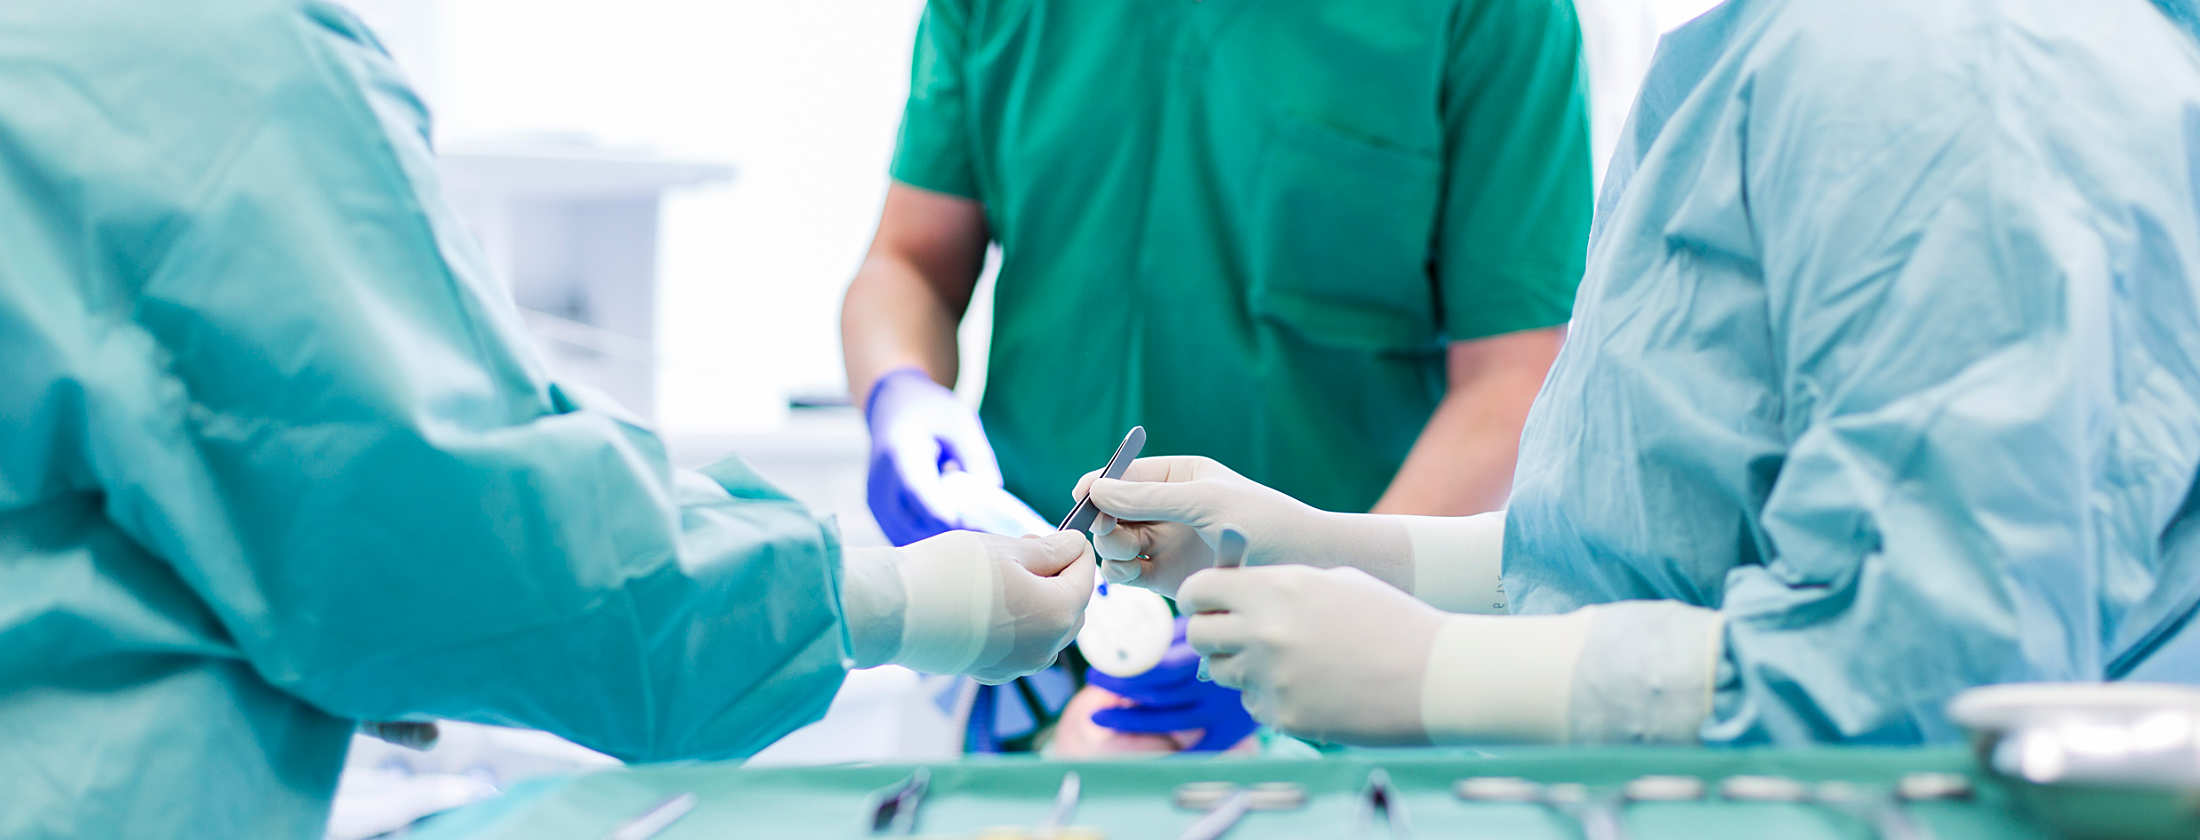 Chirurgen bei einer Operation in der Berger Klinik Frankfurt bei einem allgemeinen operativen chirurgischen Eingriff. Fachärzte und OP-Schwestern hantieren mit chirurgischen Instrumenten. Im Vordergrund steht eine OP-Ablage mit weiteren Utensilien.